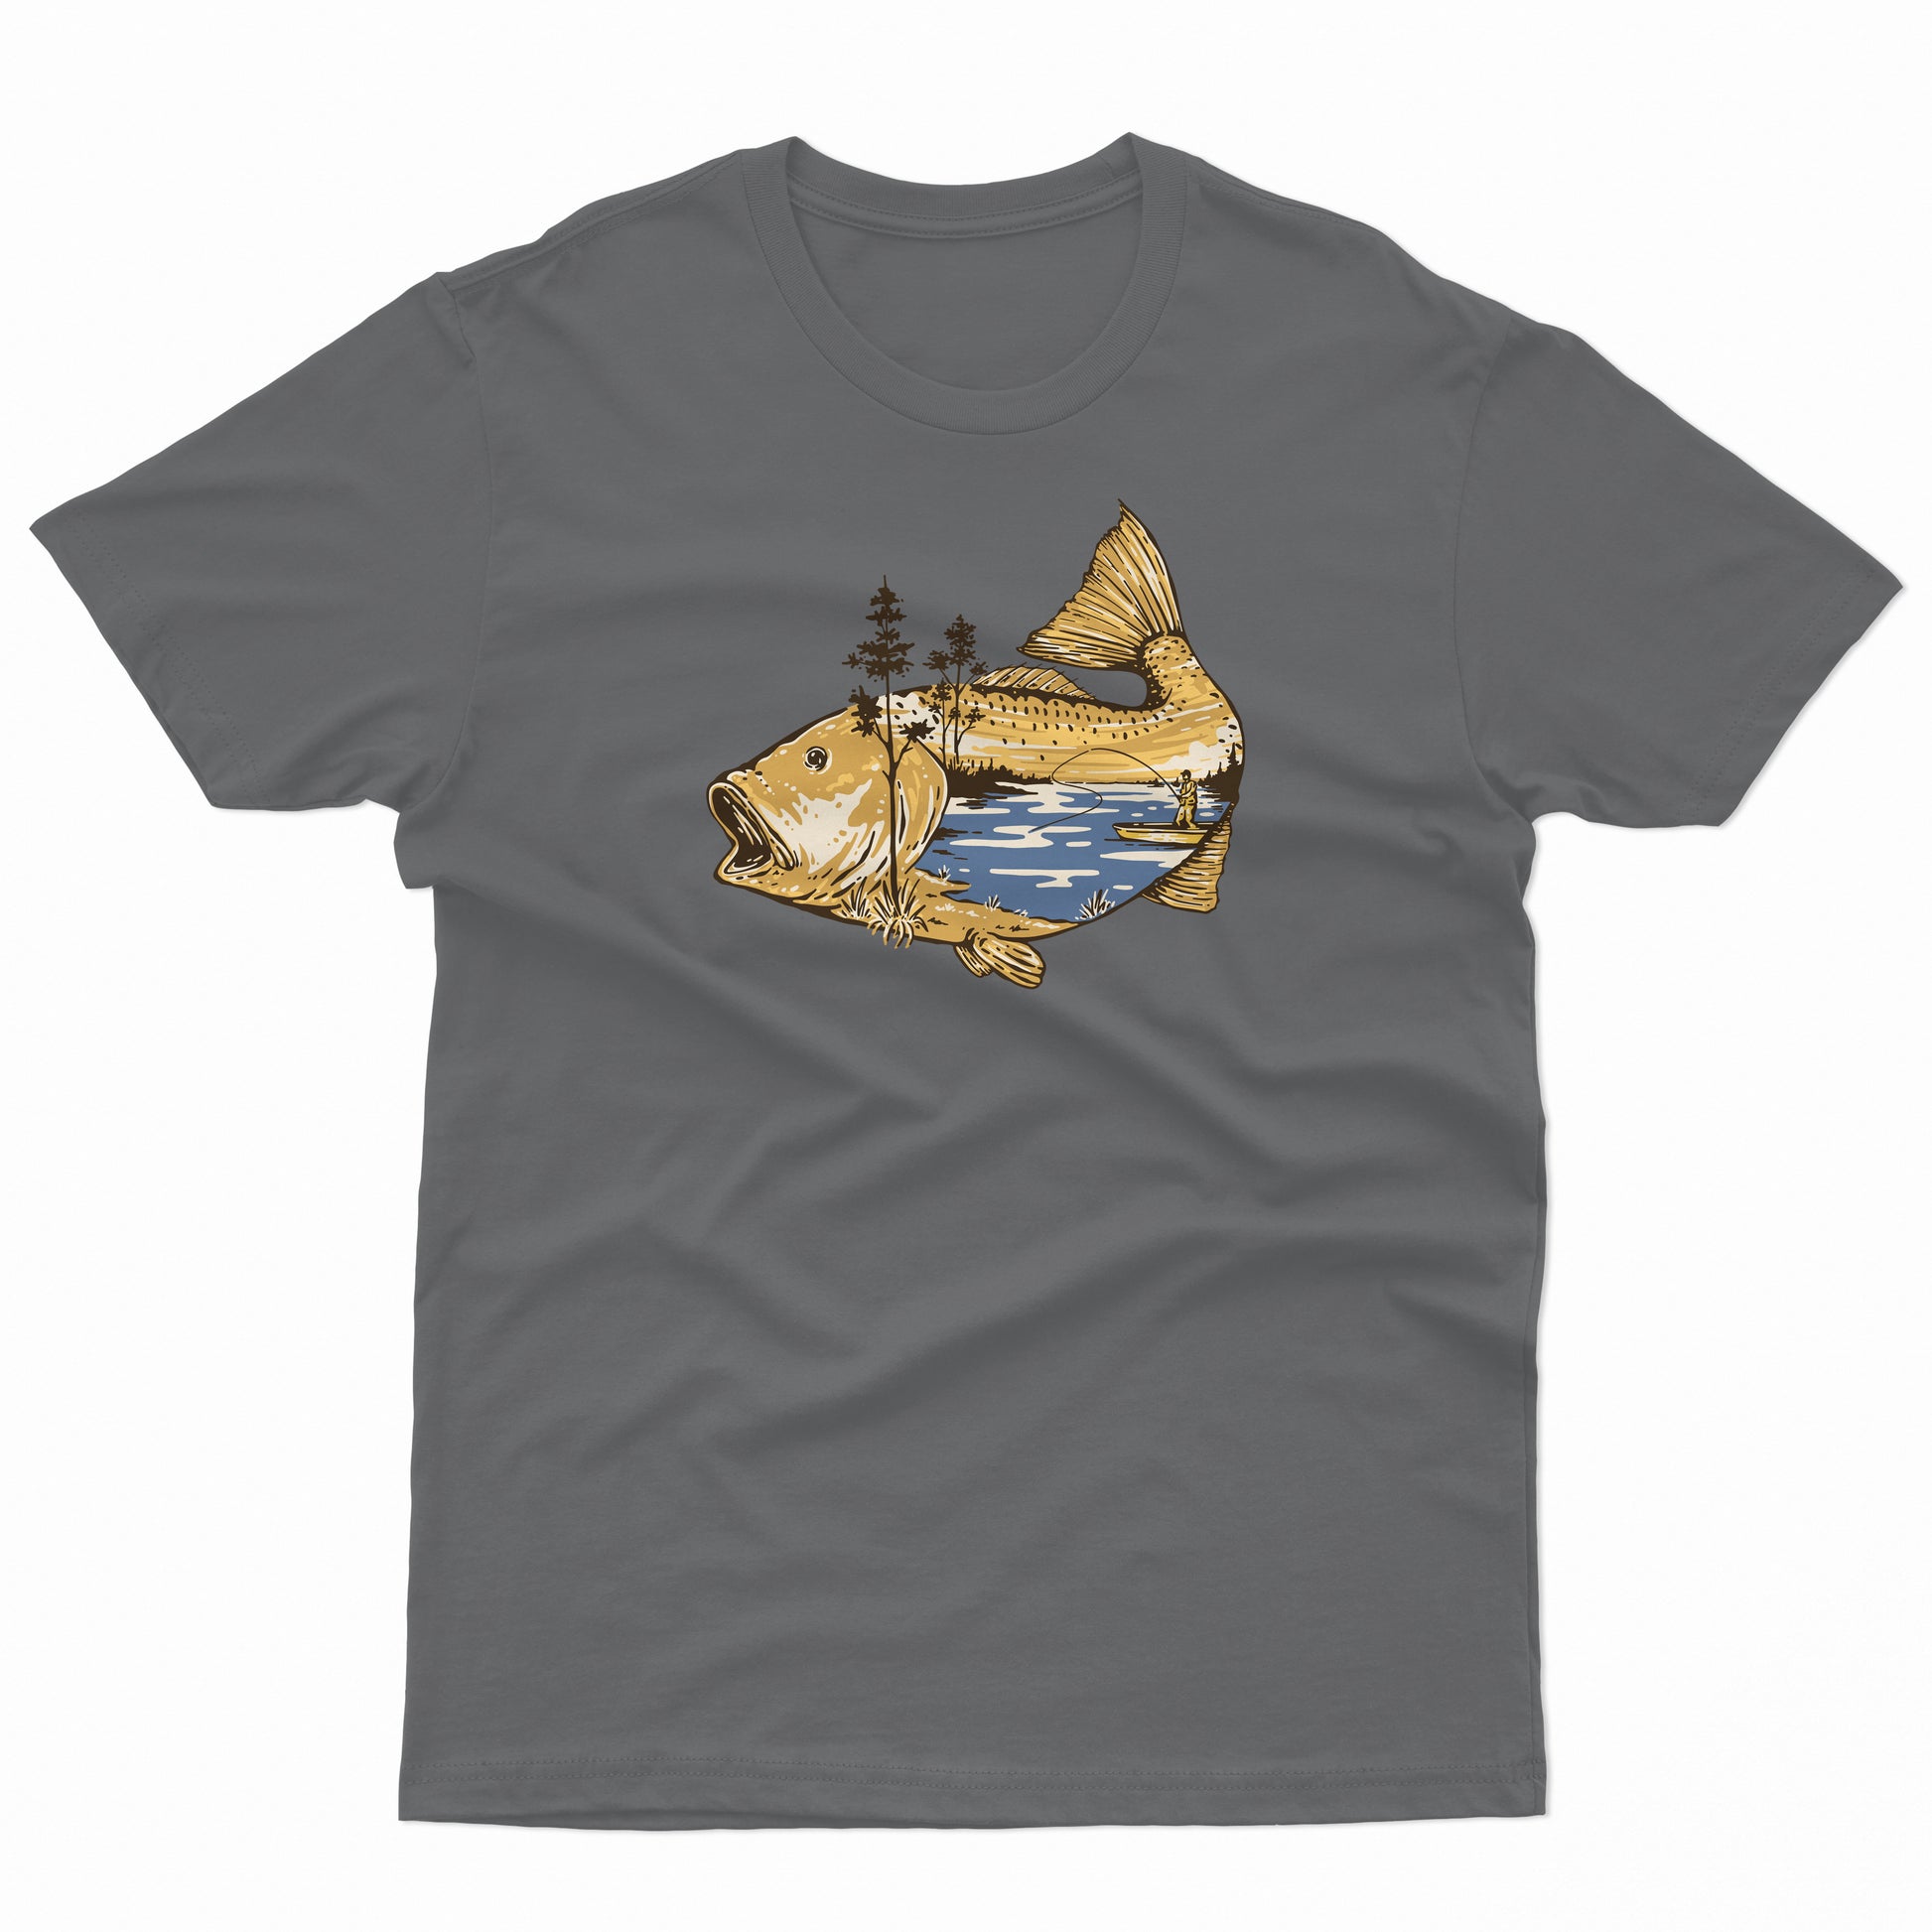 Carp fishing scene art - Grey T-Shirt – rodlifefishing